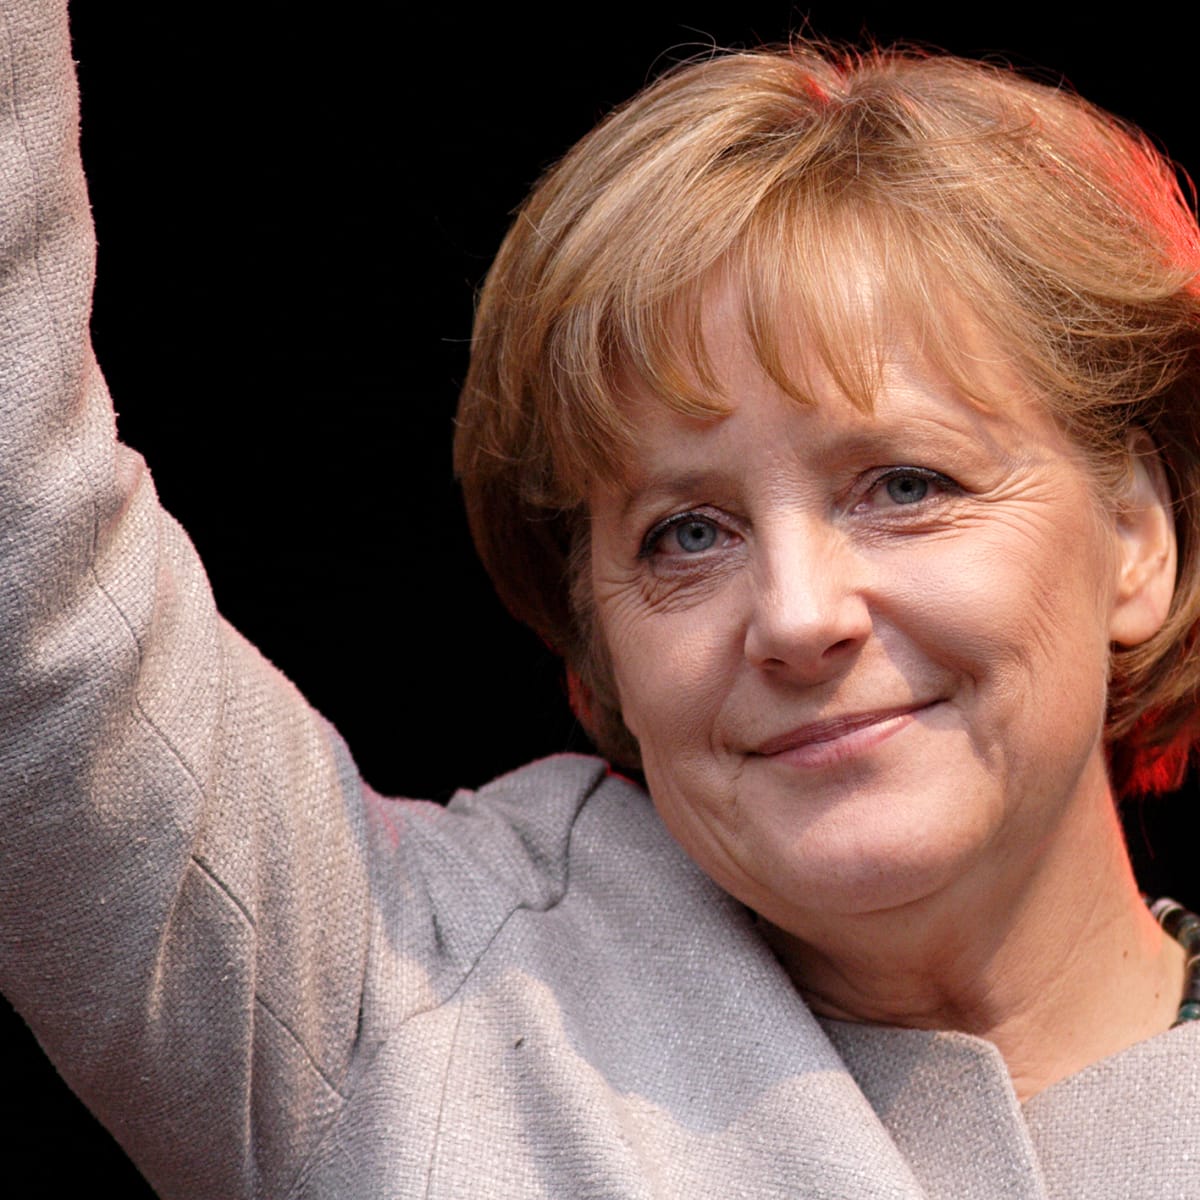 Terčem odposlechů NSA měla být i německá kancléřka Angela Merkel. Přitom je Německo vedle Velké Británie největším spojencem USA na půdě starého kontinentu.